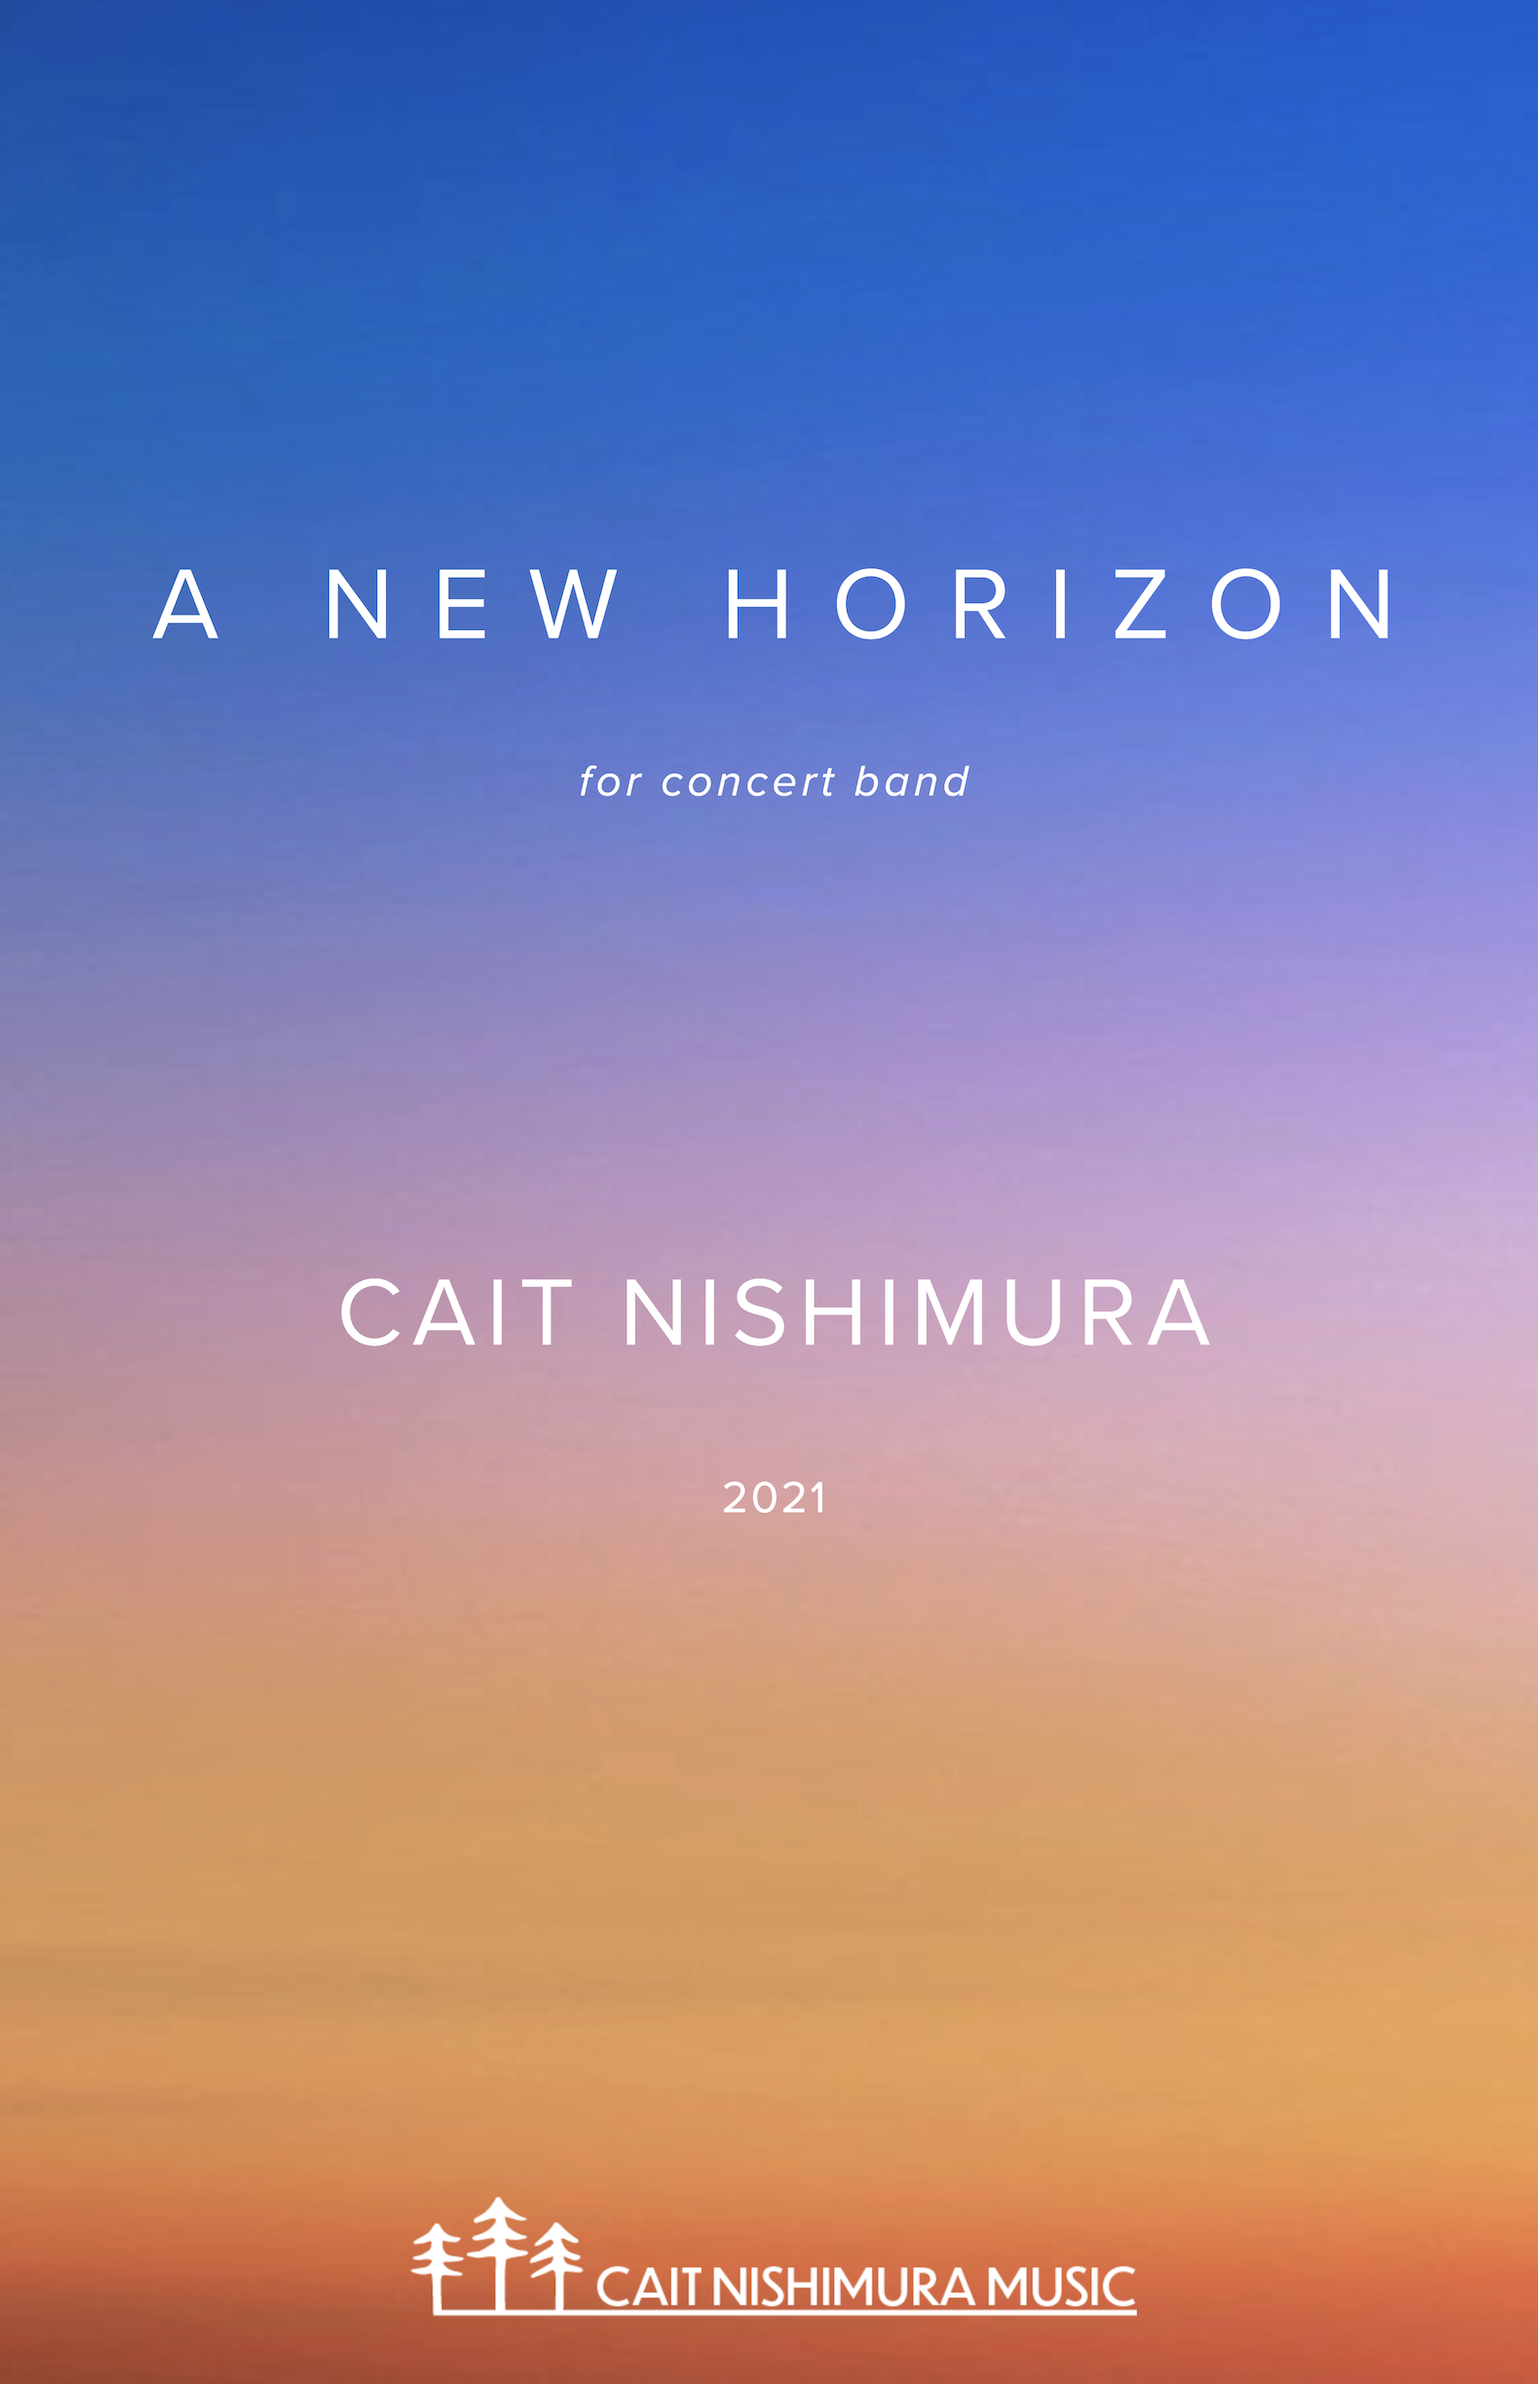 A New Horizon by Cait Nishimura 